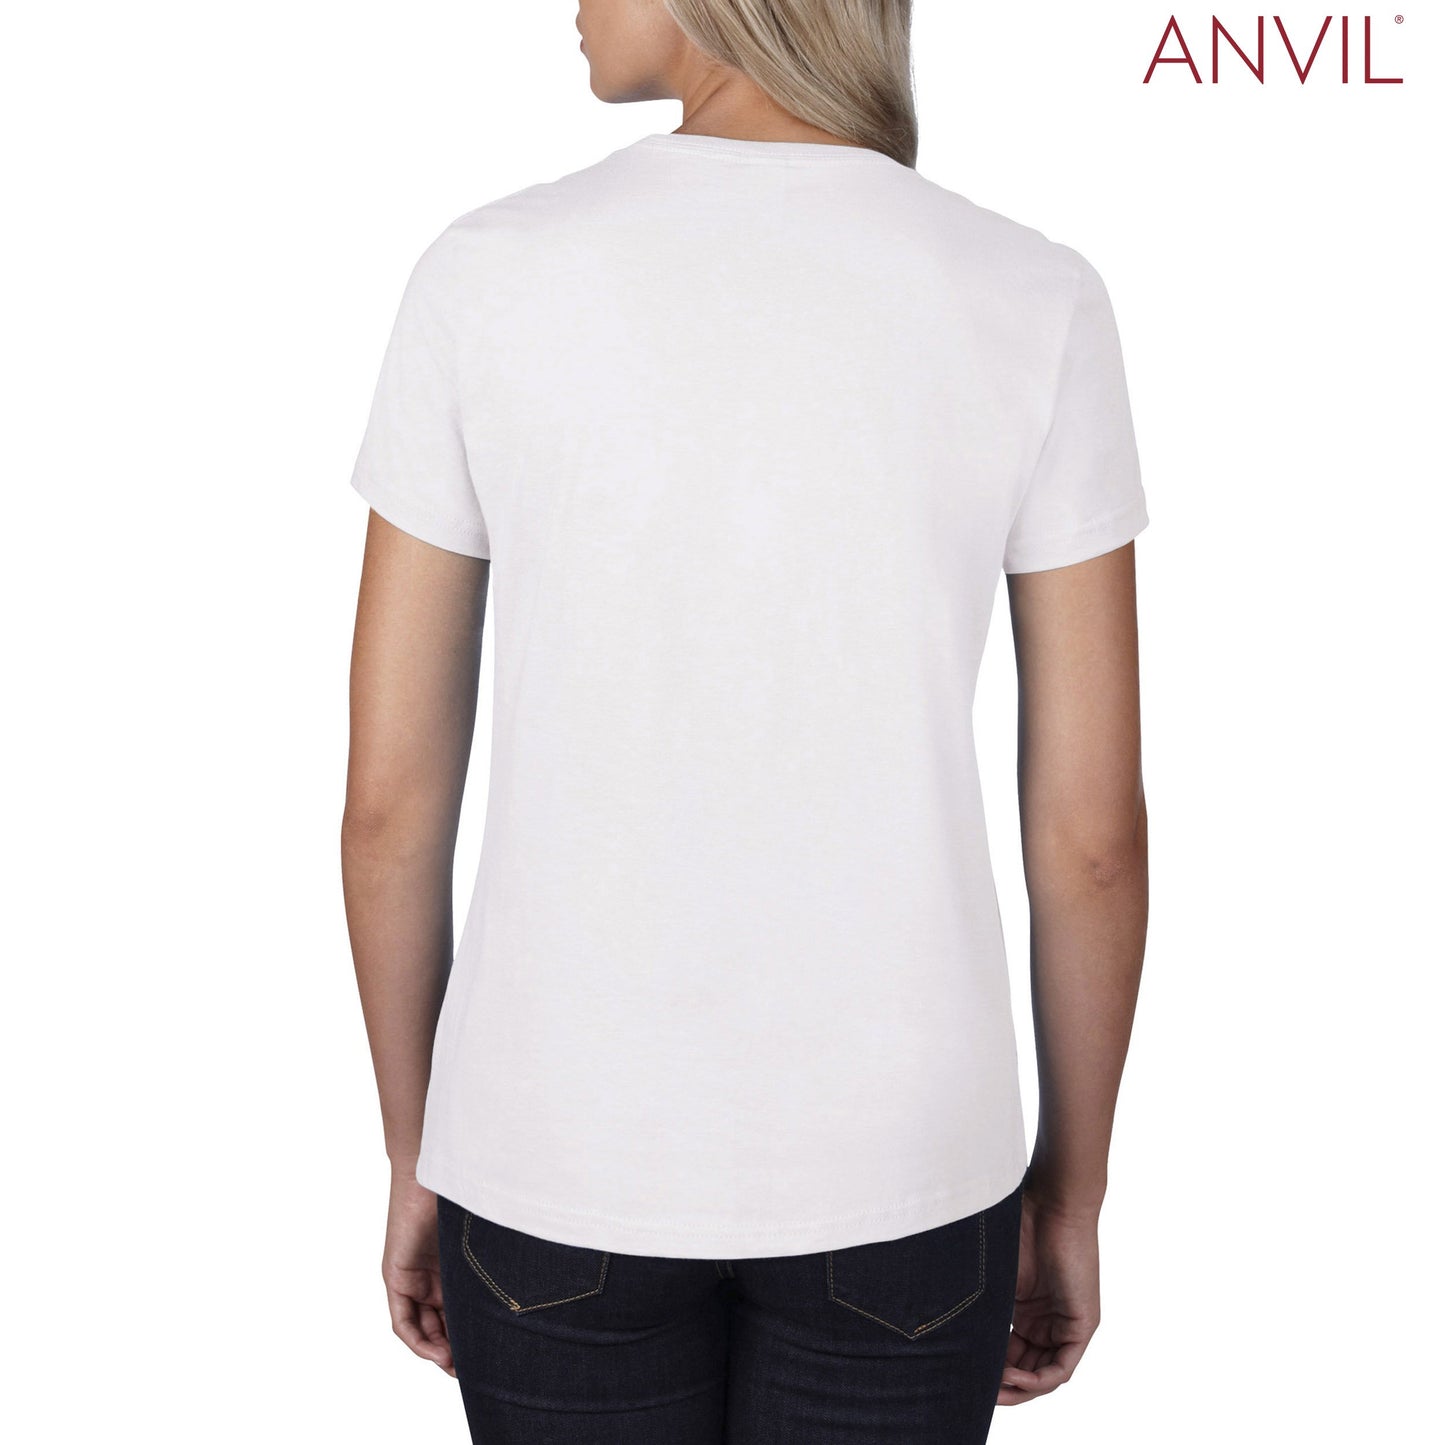 790L Anvil Ladies™ Urban T-Shirt